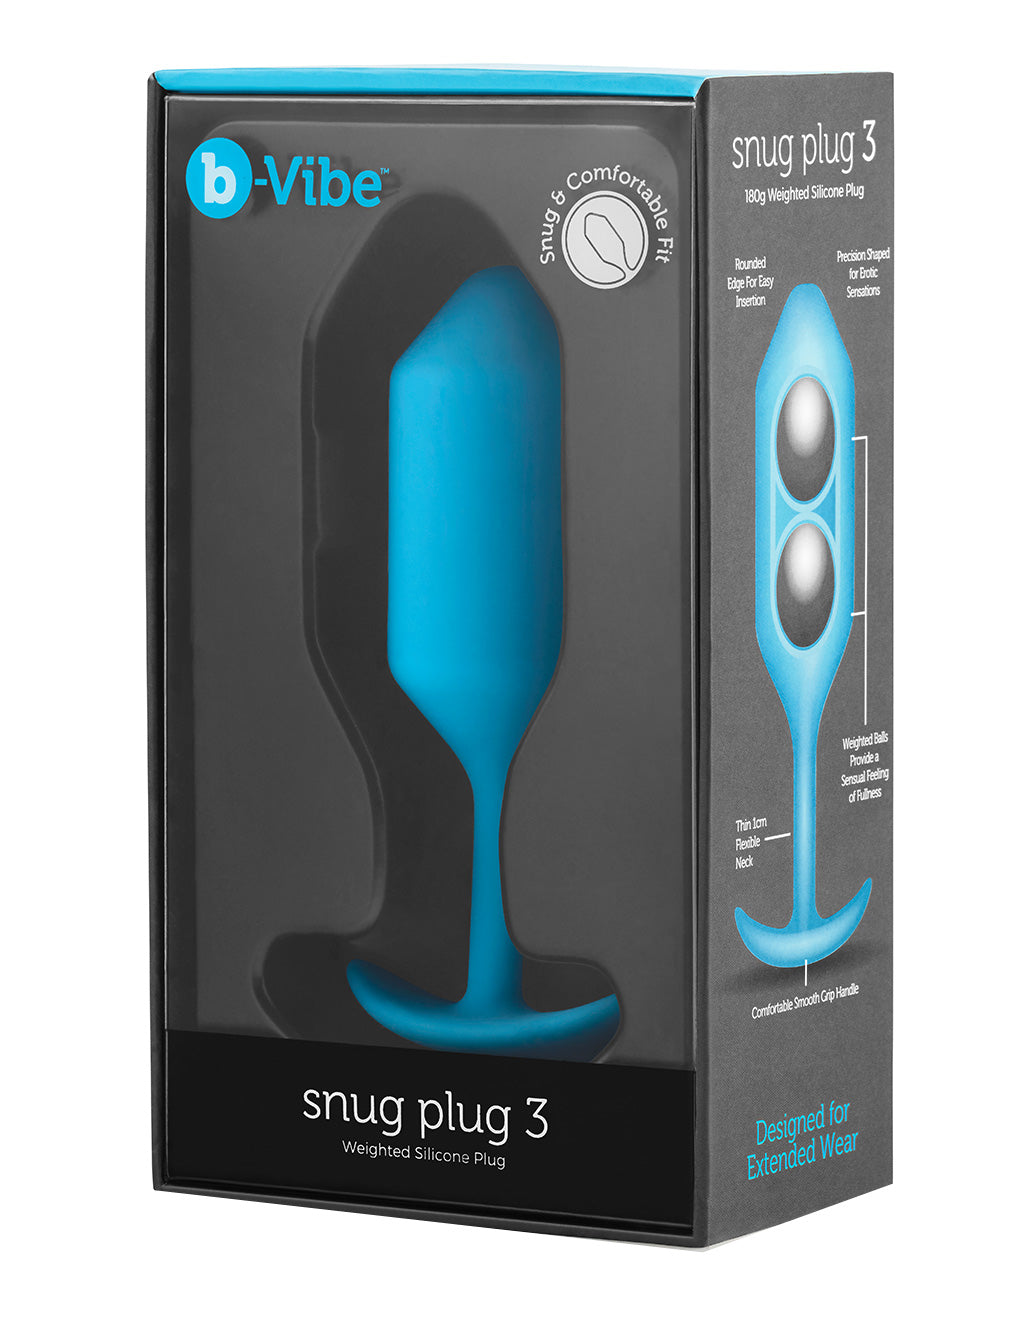 B-Vibe Snug Plug 3- Package